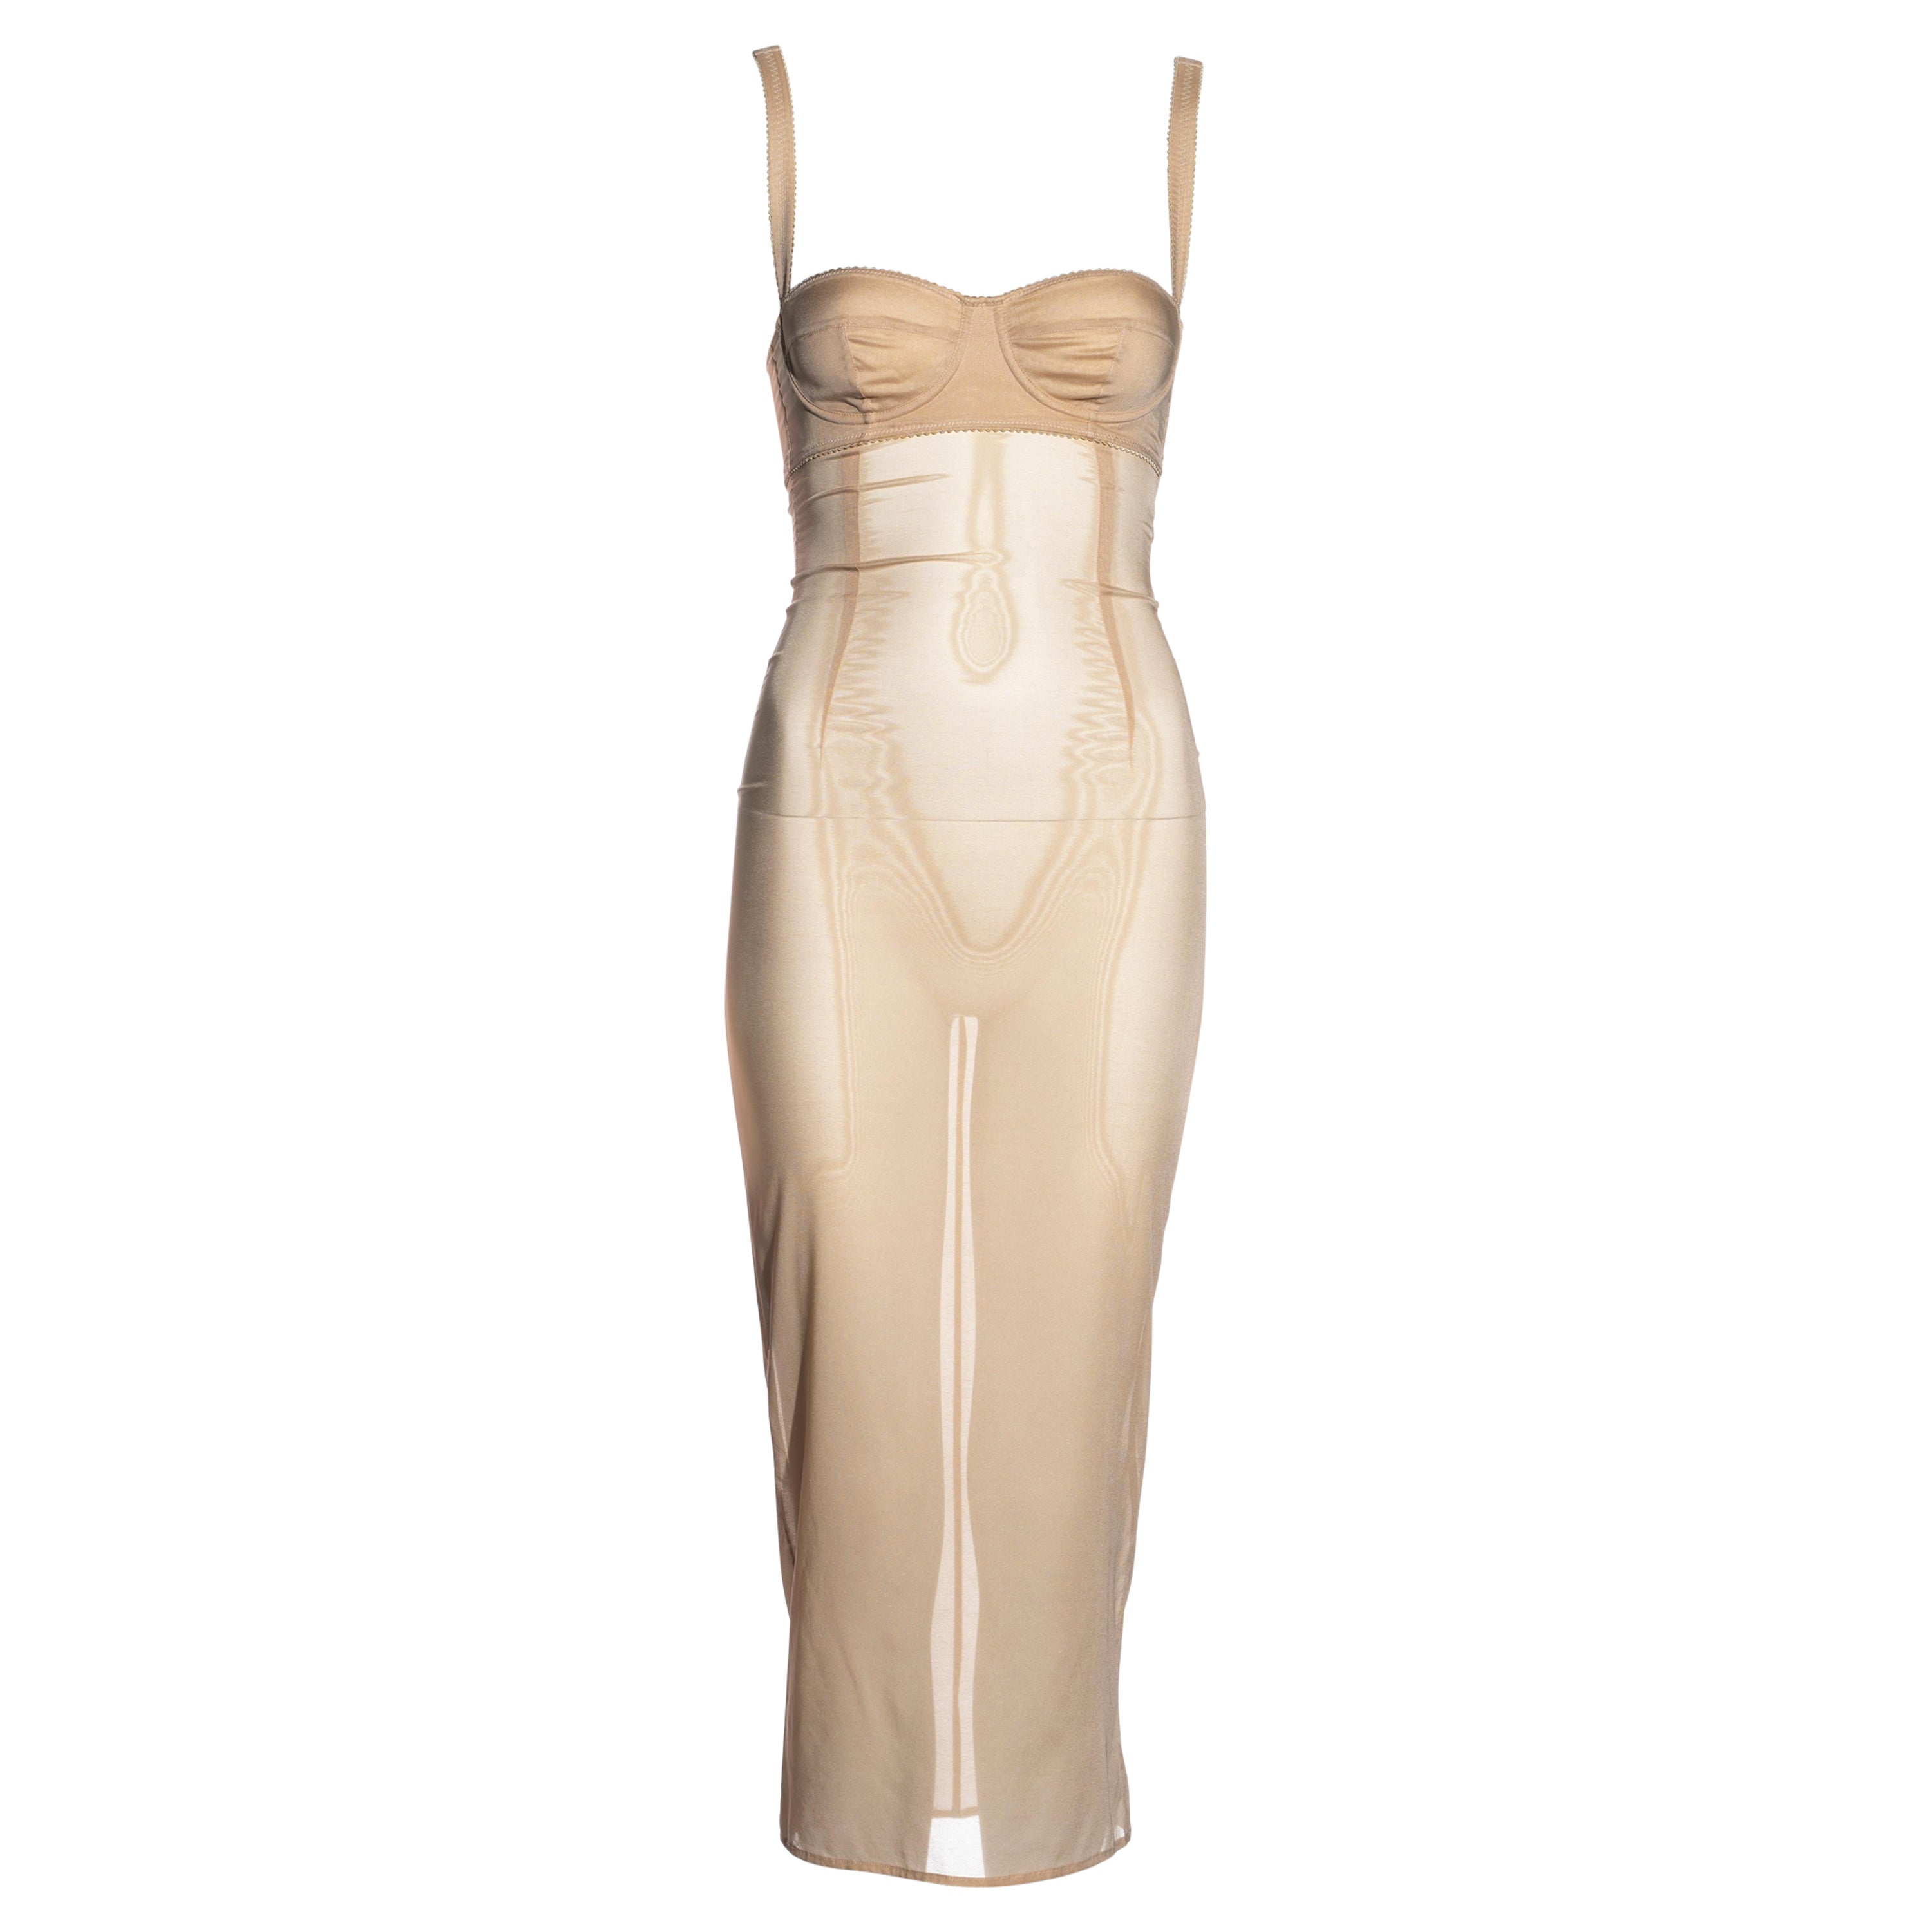 Dolce & Gabbana nude sheer silk bra dress, c. 2000s